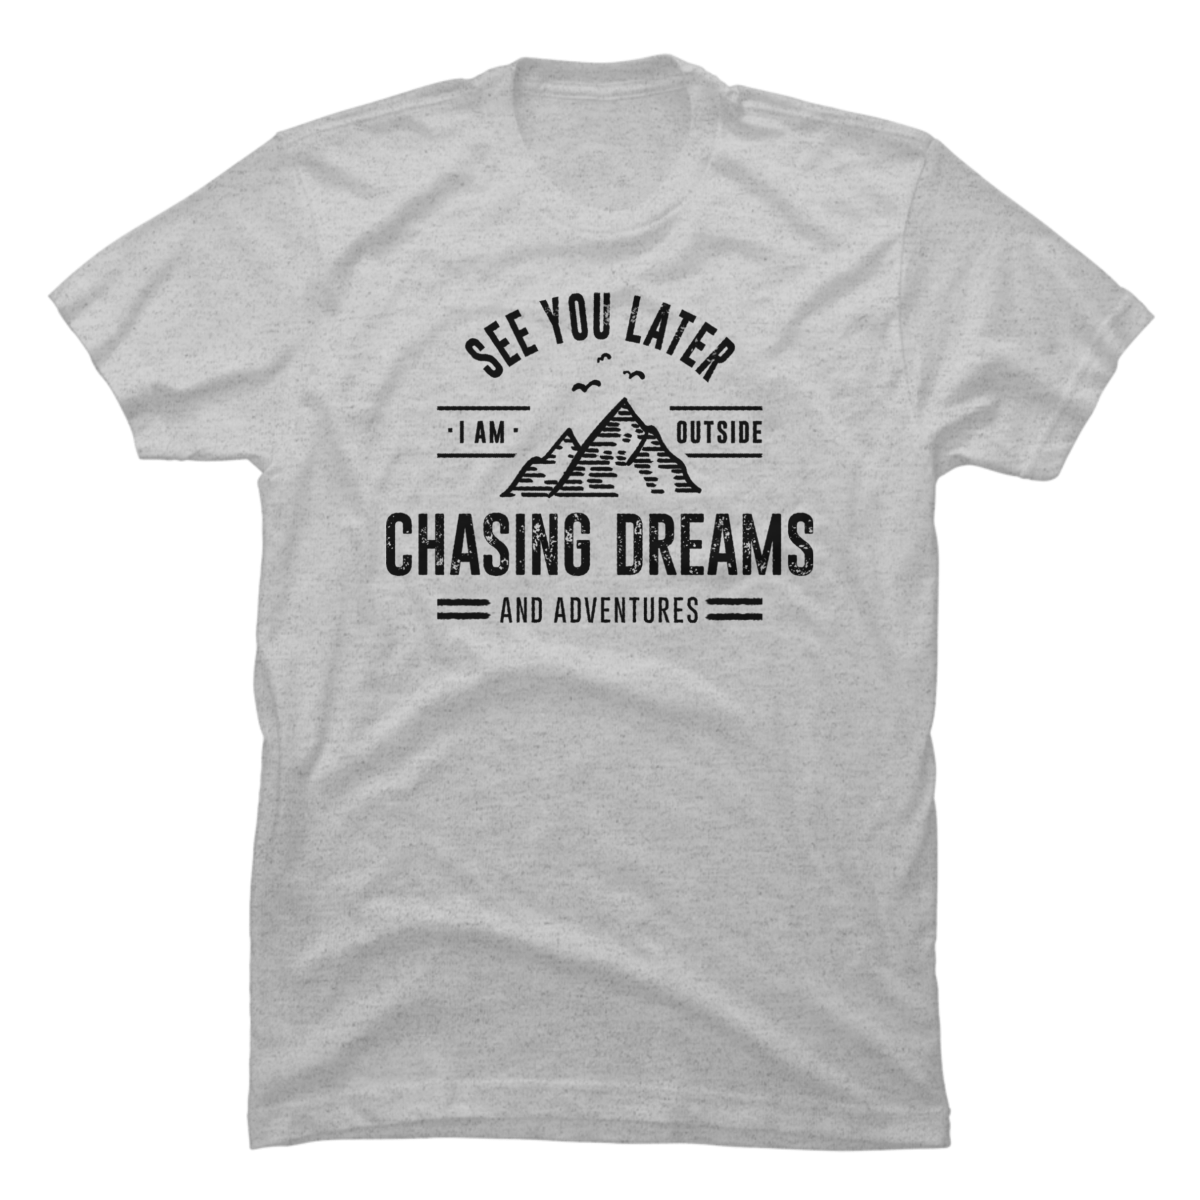 chasing dreams shirt